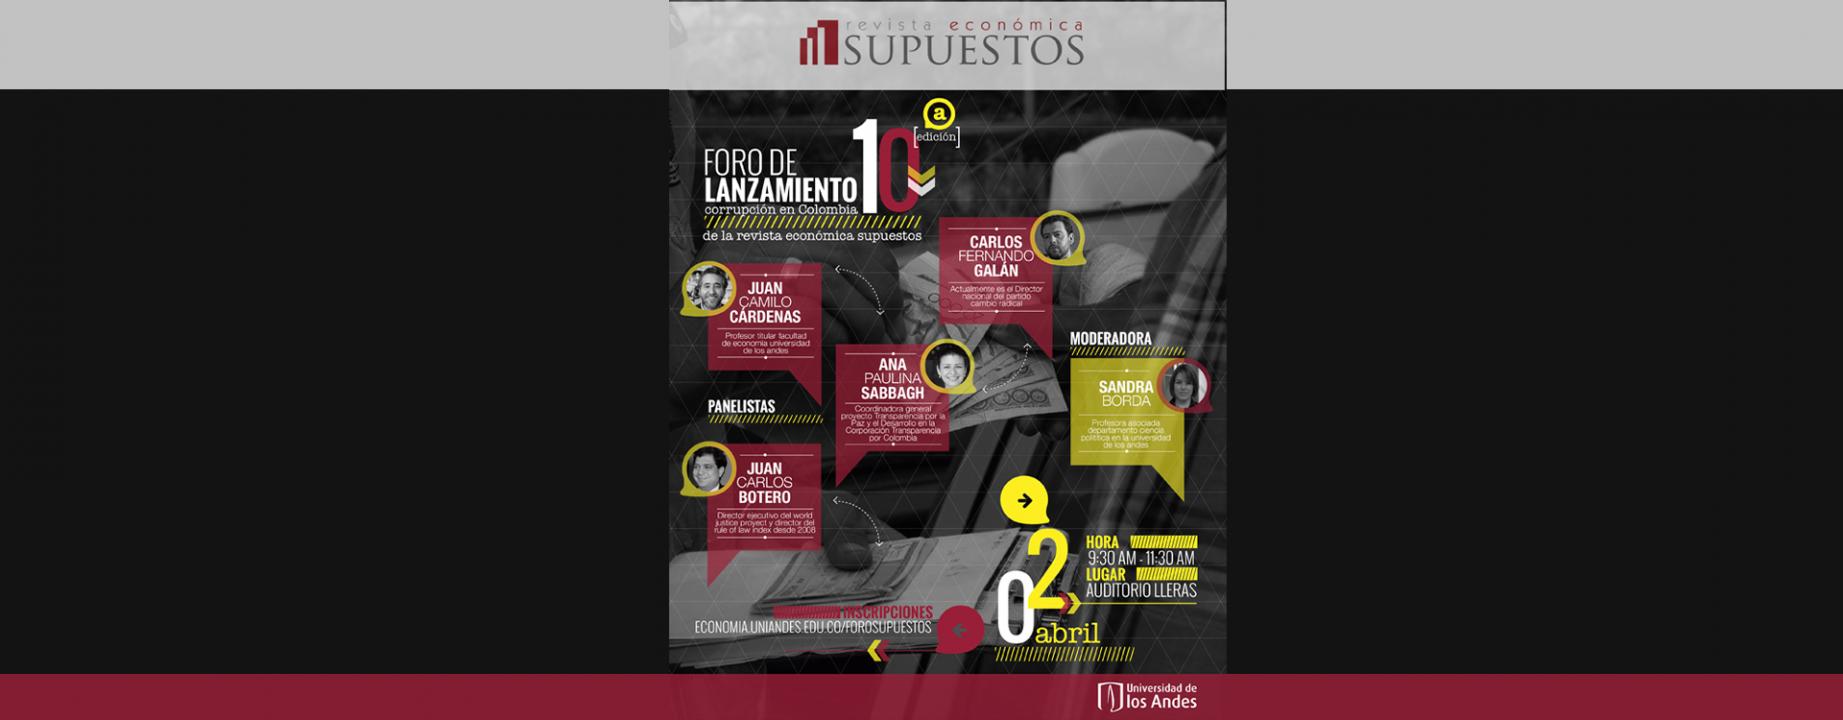 lanzamiento, corrupción en Colombia, revista económica